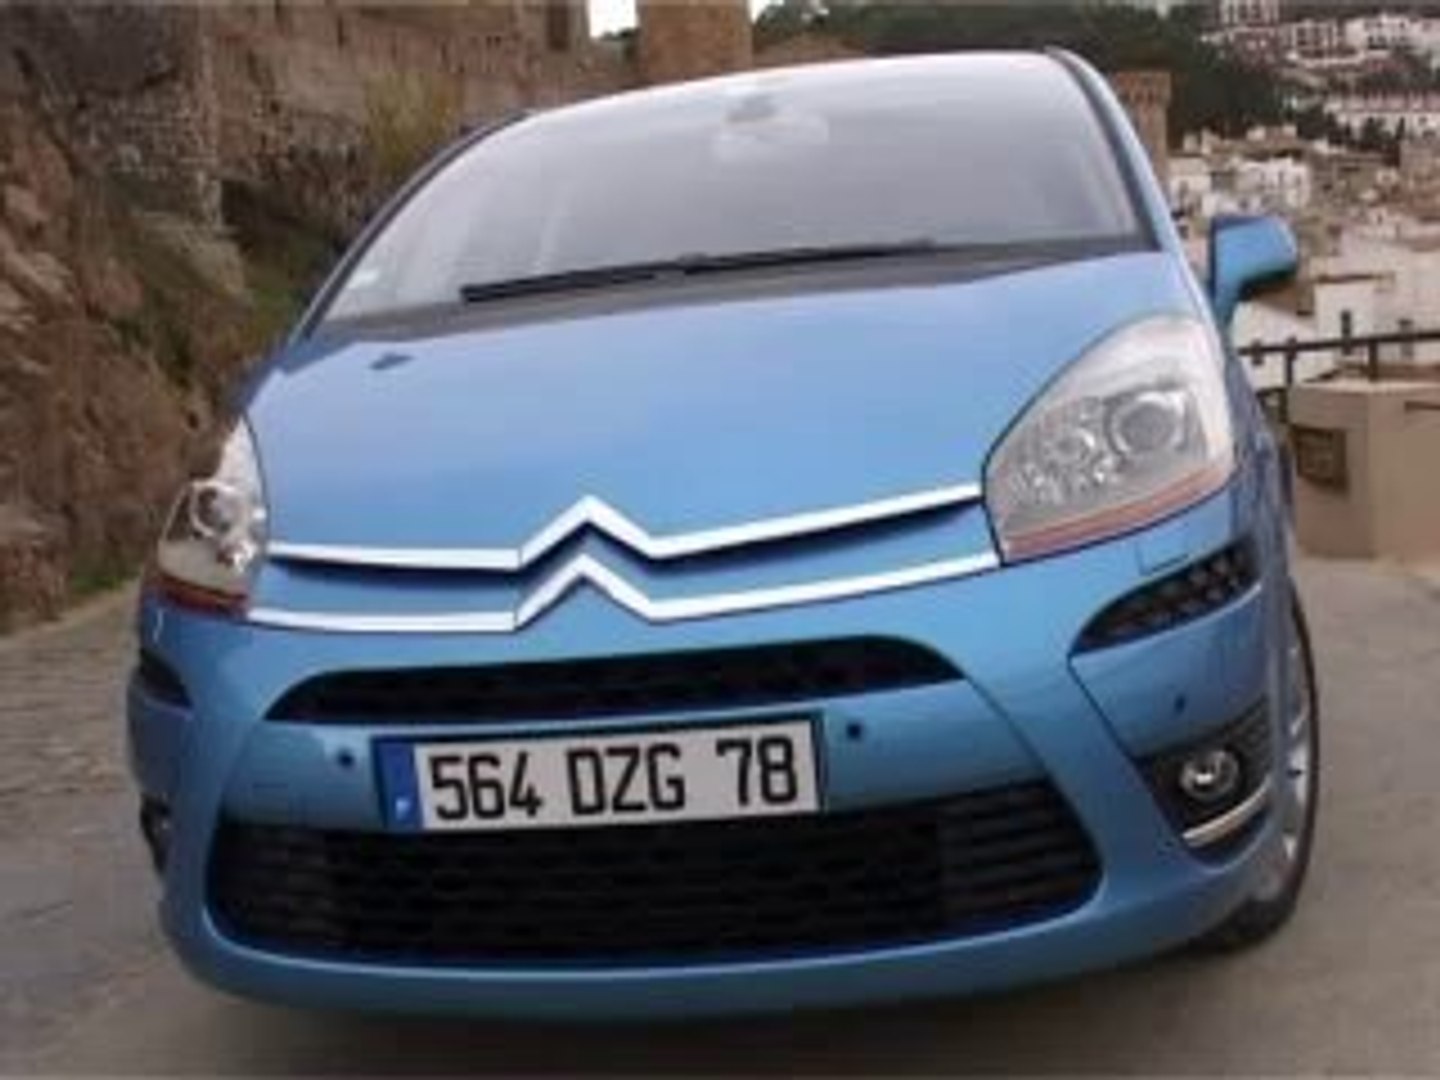 Essai Citroën C4 Picasso 5 places - Vidéo Dailymotion